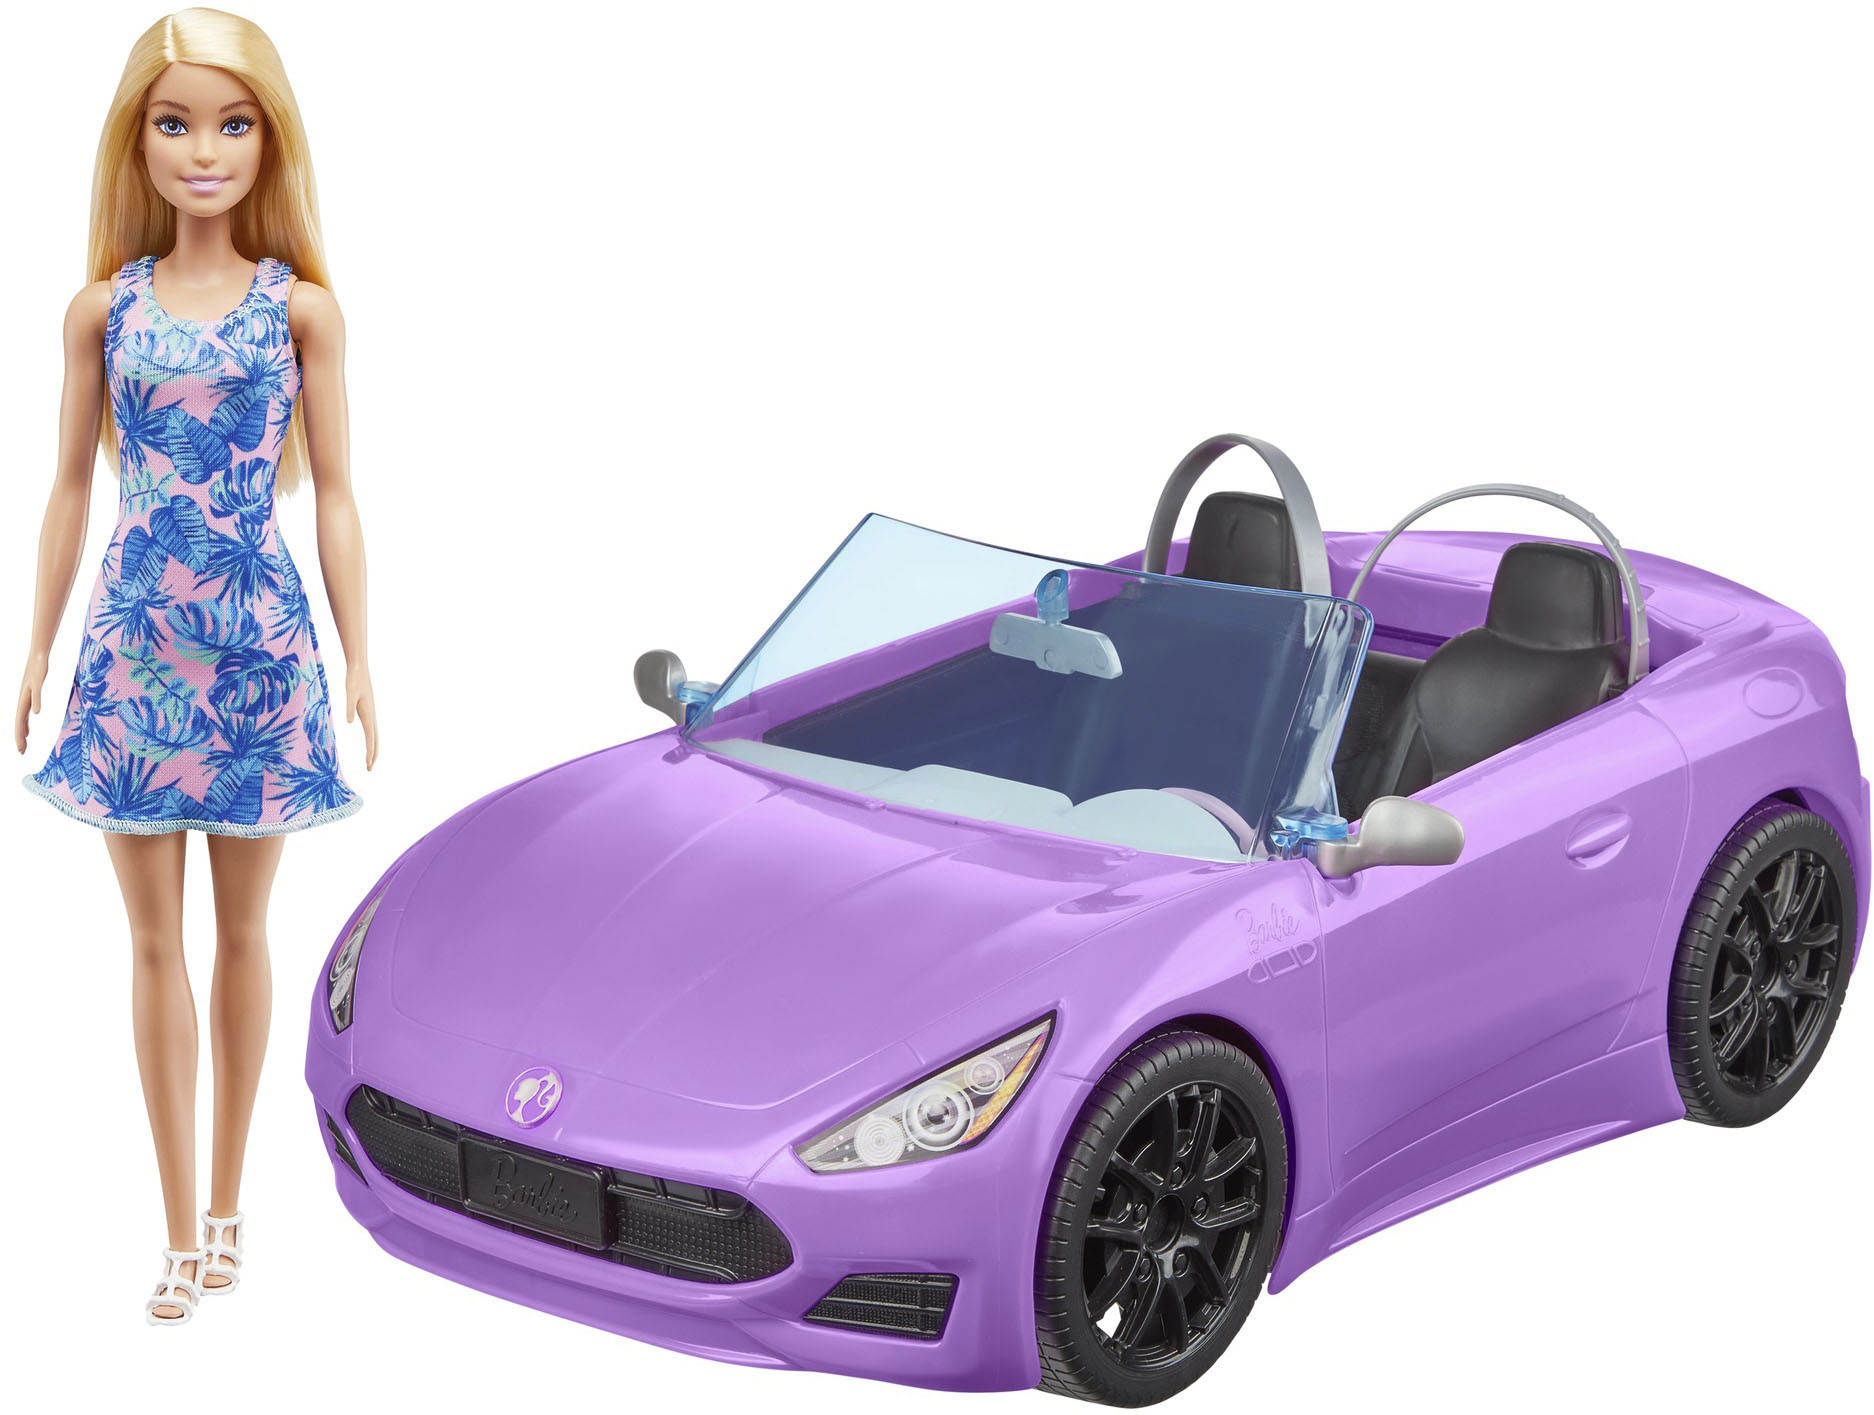 leg uit Rijke man leeg Barbie Doll & Vehicle Playset Blonde Pink HBY29 - Best Buy